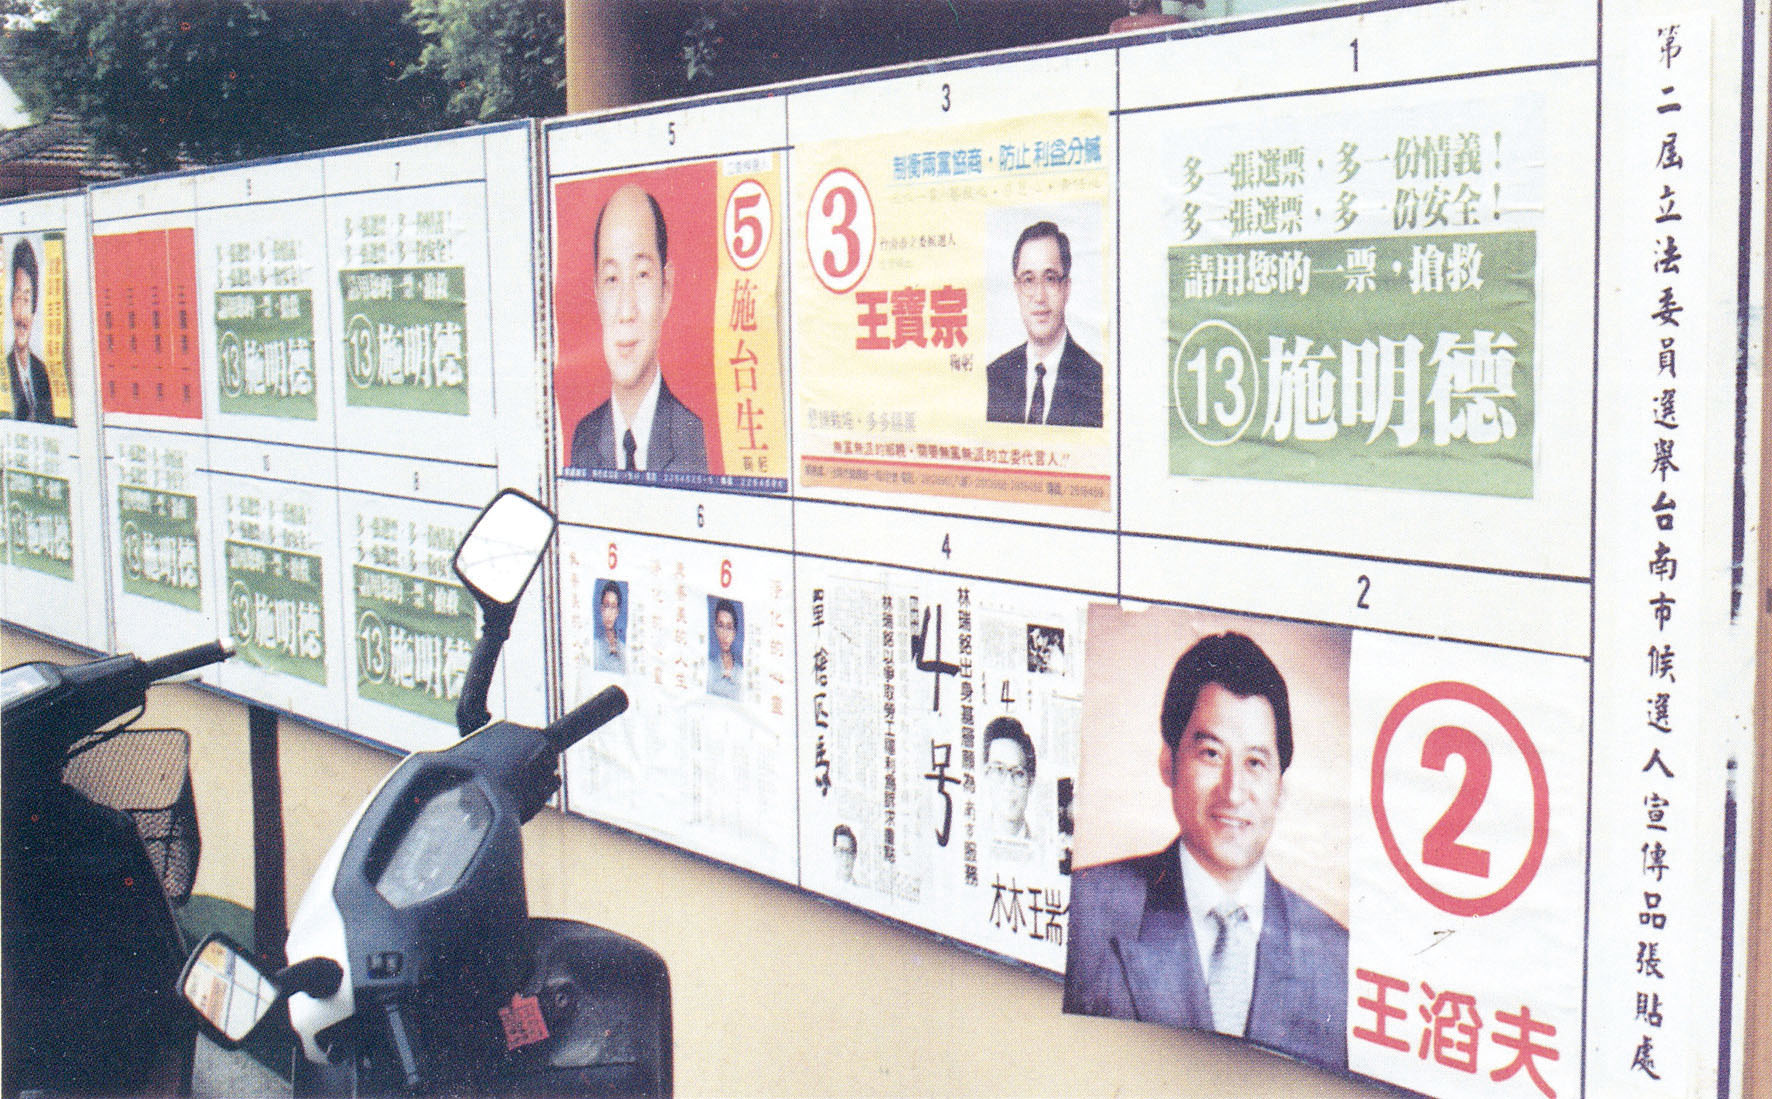 民國81年，第2屆立法委員選舉，候選人宣傳品張貼處。